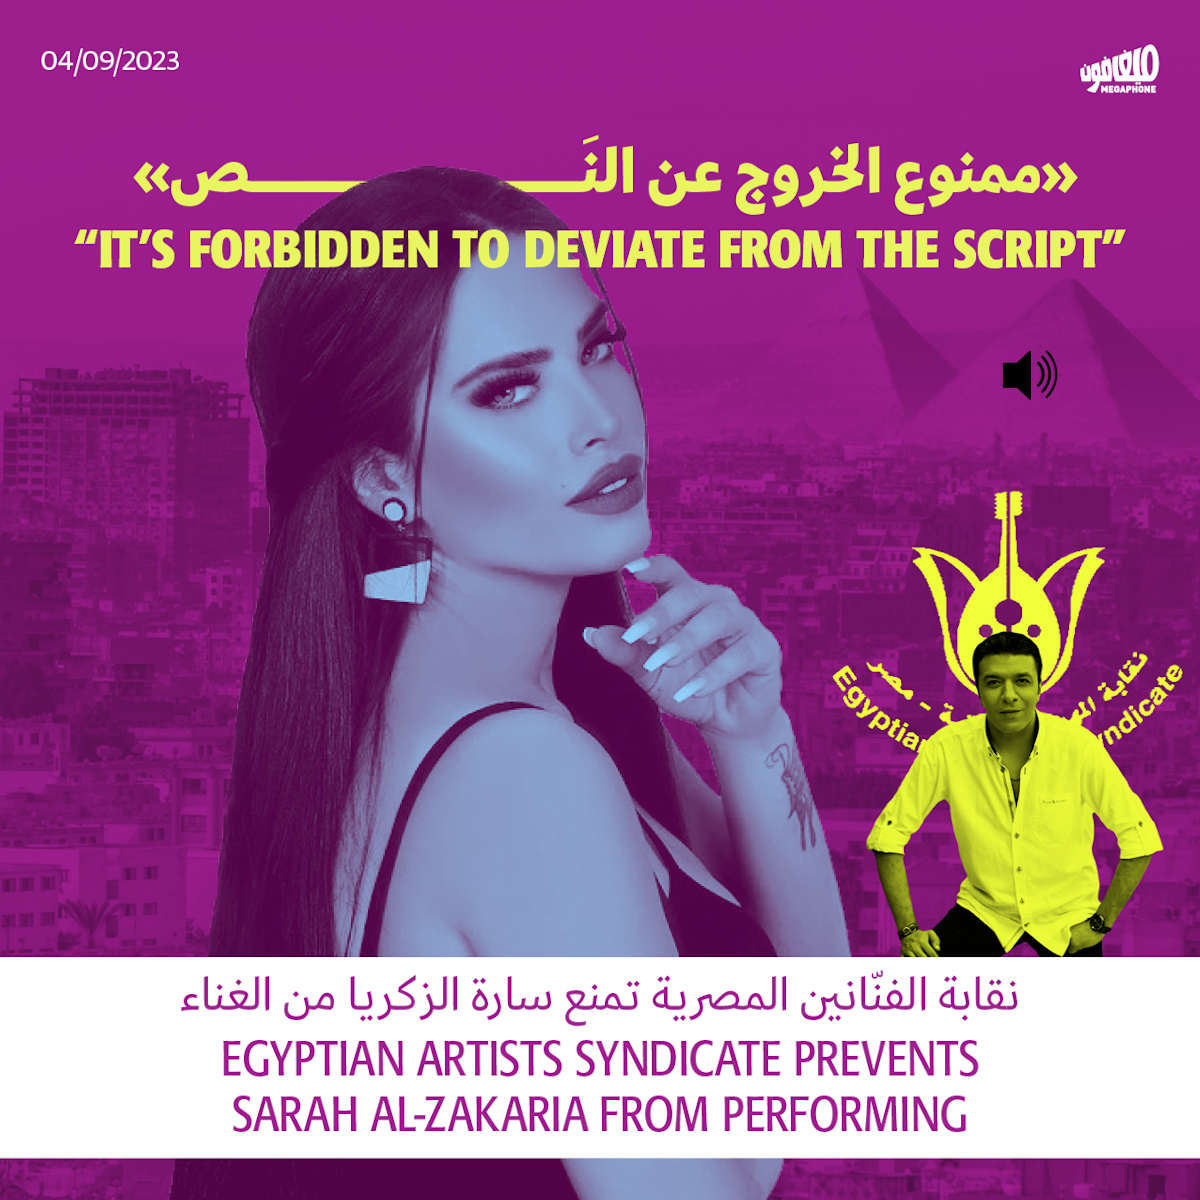 نقابة الفنّانين المصريّة تمنع سارة الزكريا من الغناء